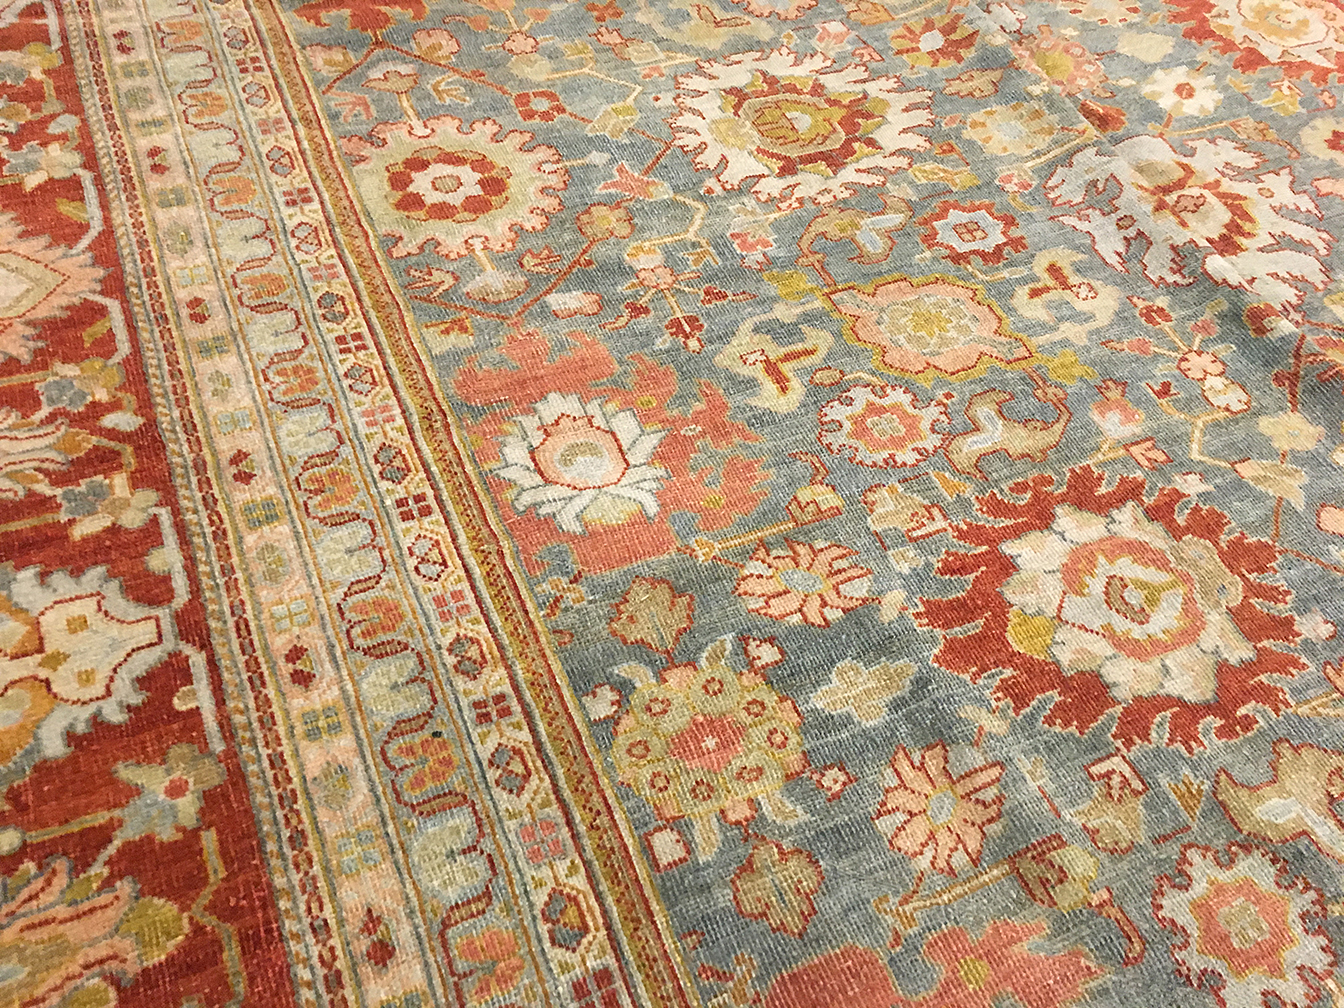 Antique mahal Carpet - # 52955